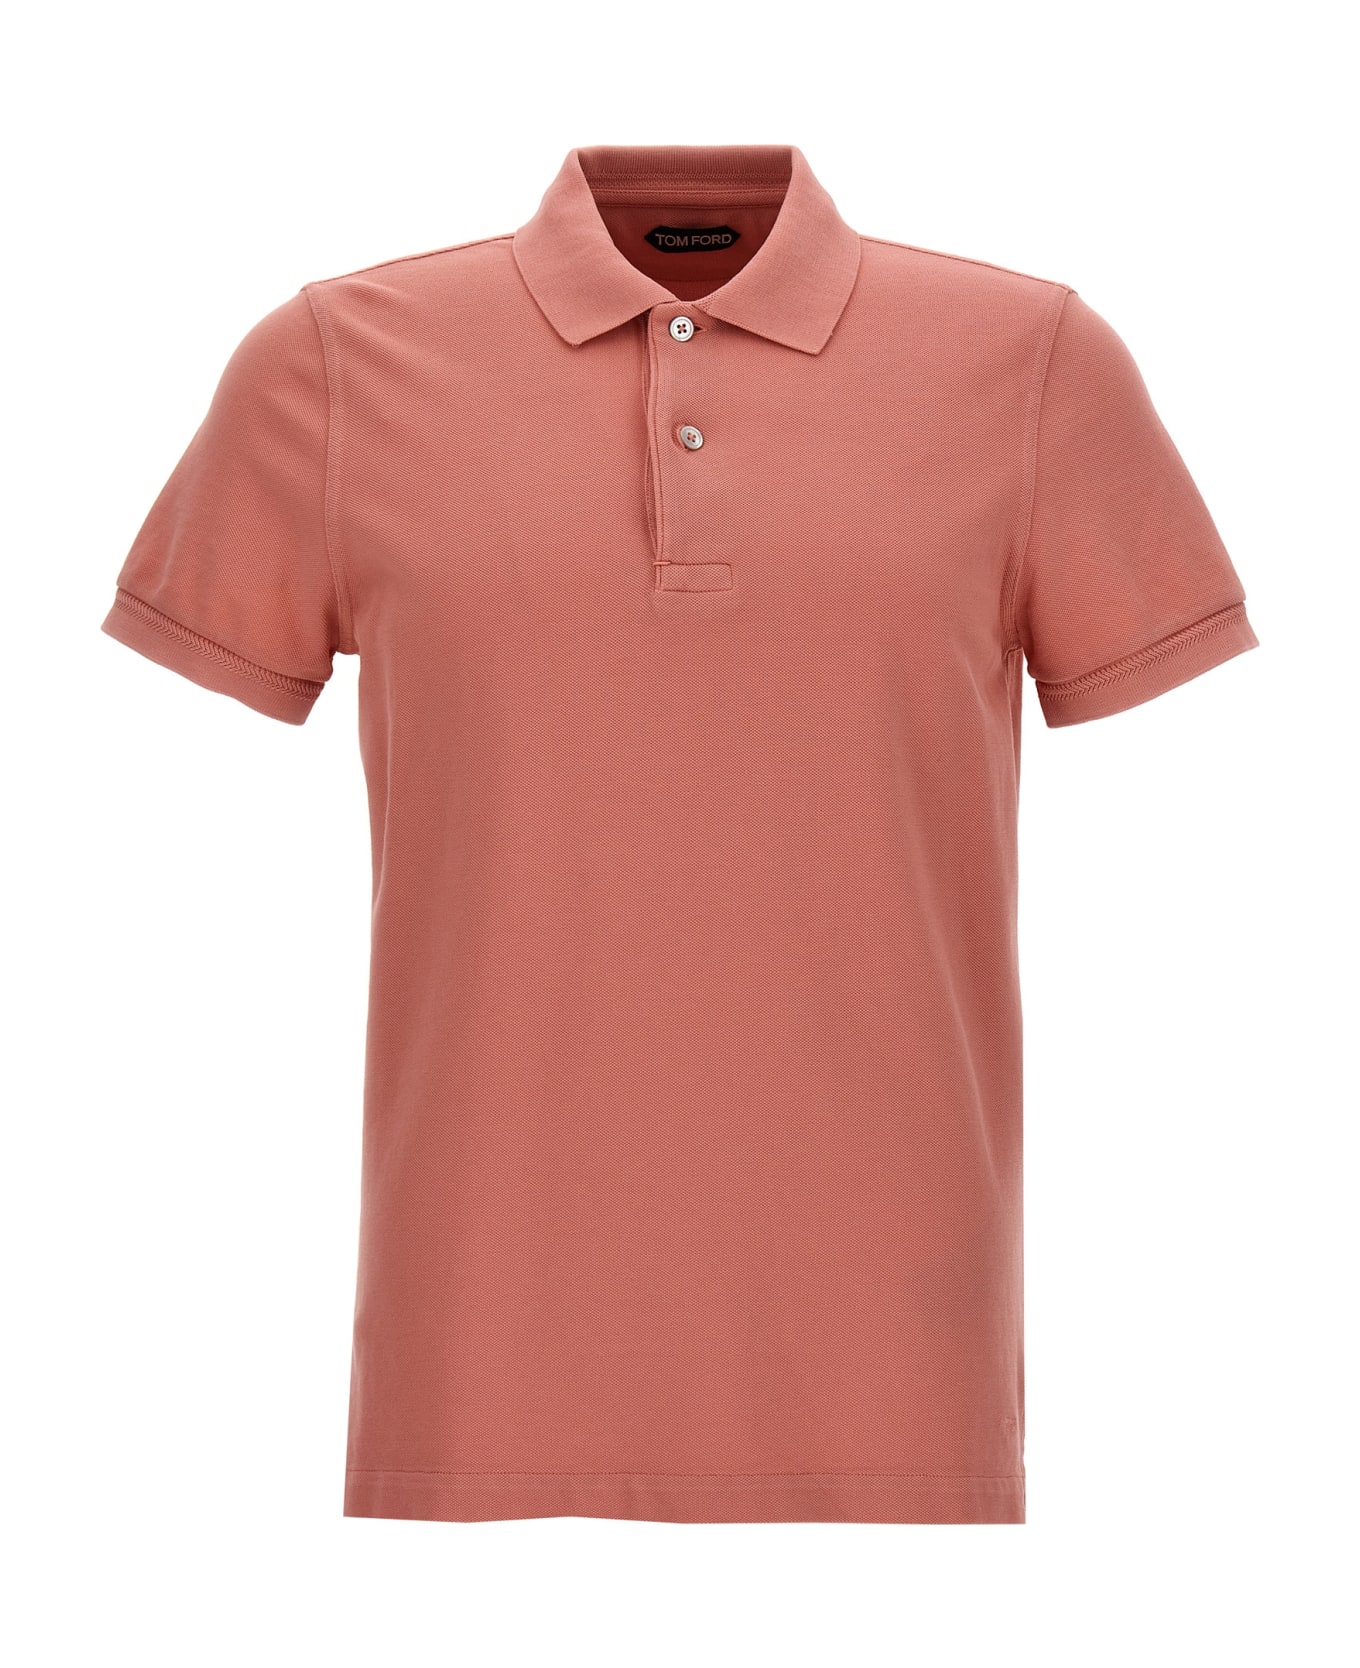 Tom Ford 'tennis Piquet' Polo Shirt - Pink